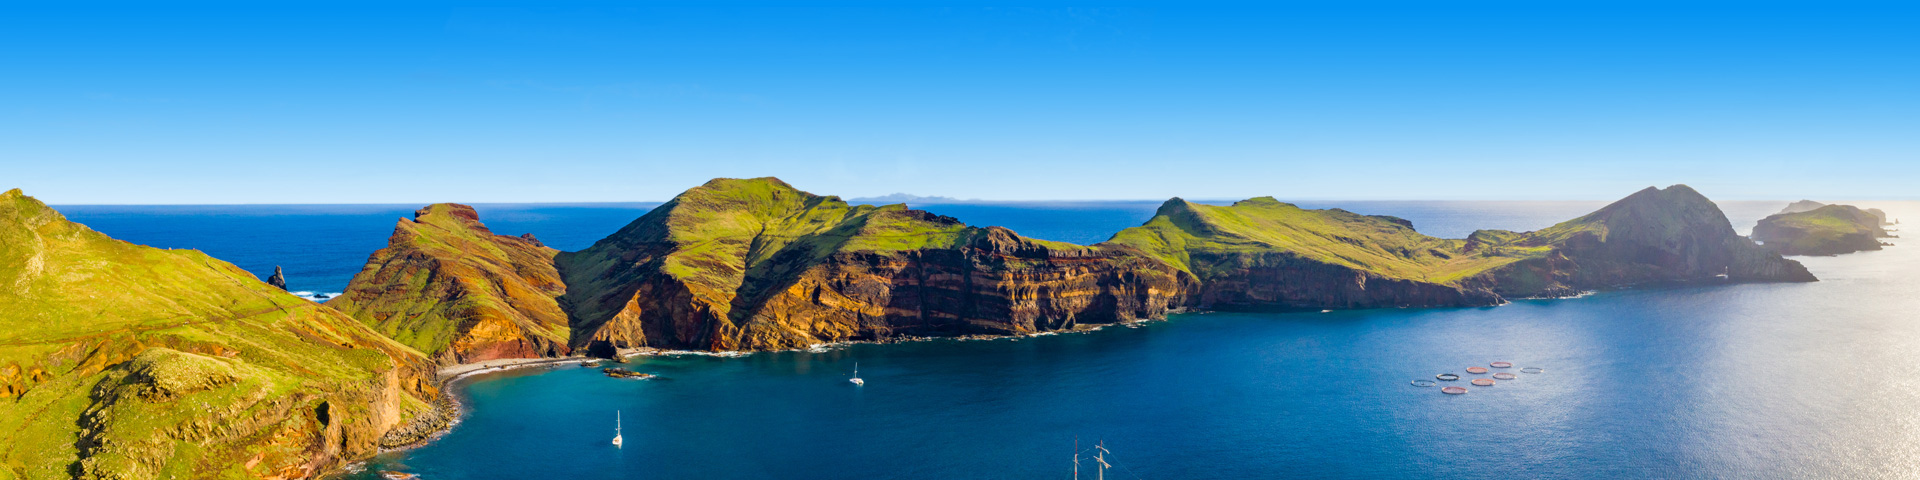 Kust met kliffen op Madeira